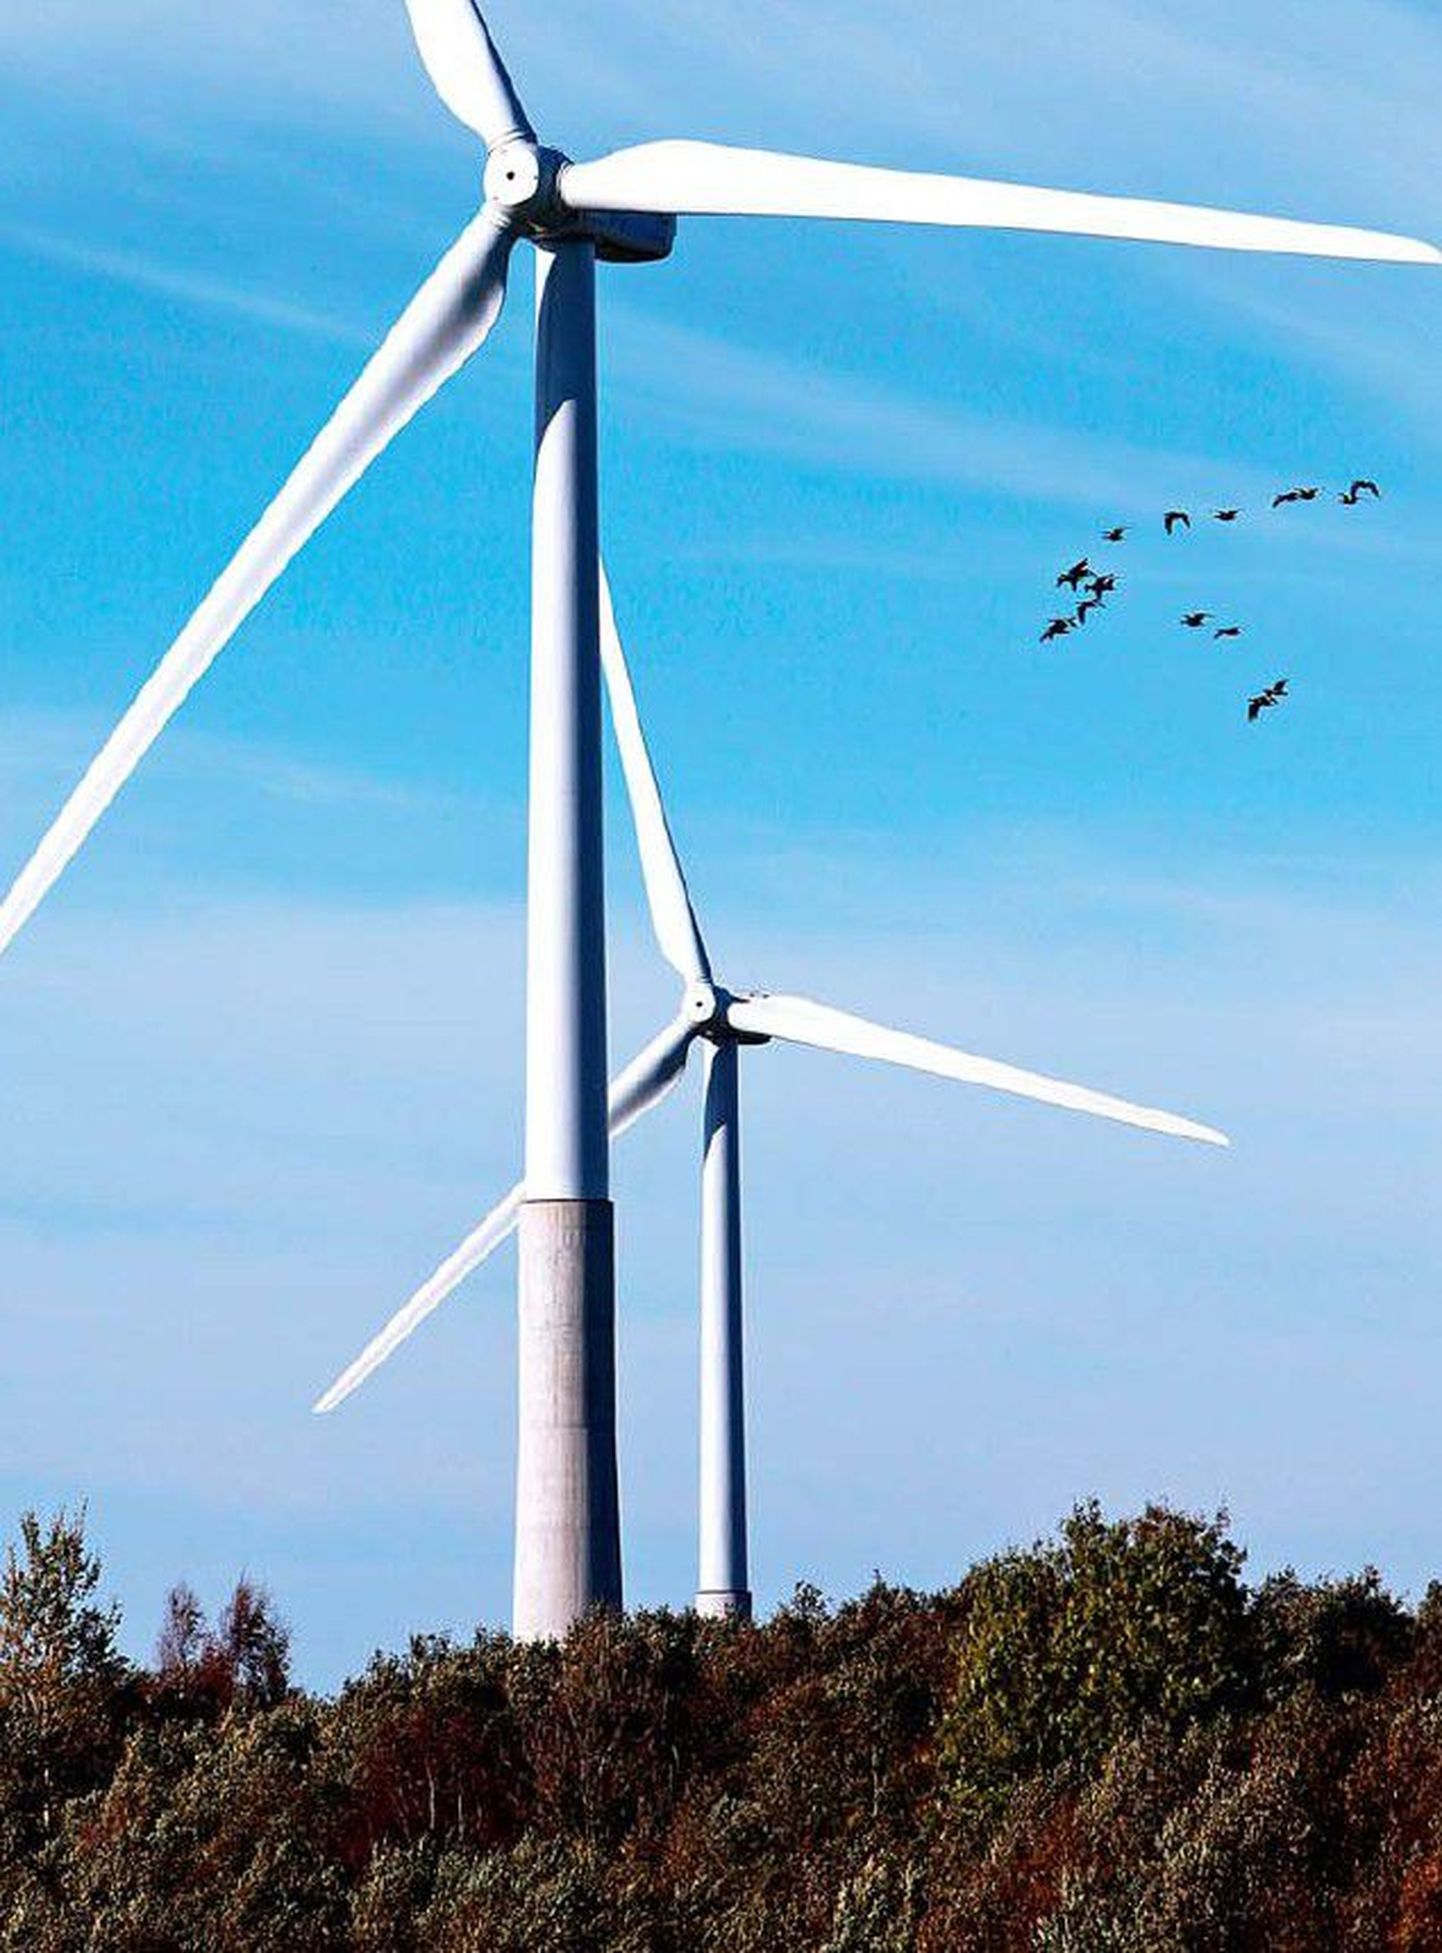 Keskkonnasäästliku tuuleenergia nõrkuseks on suured investeeringukulud.